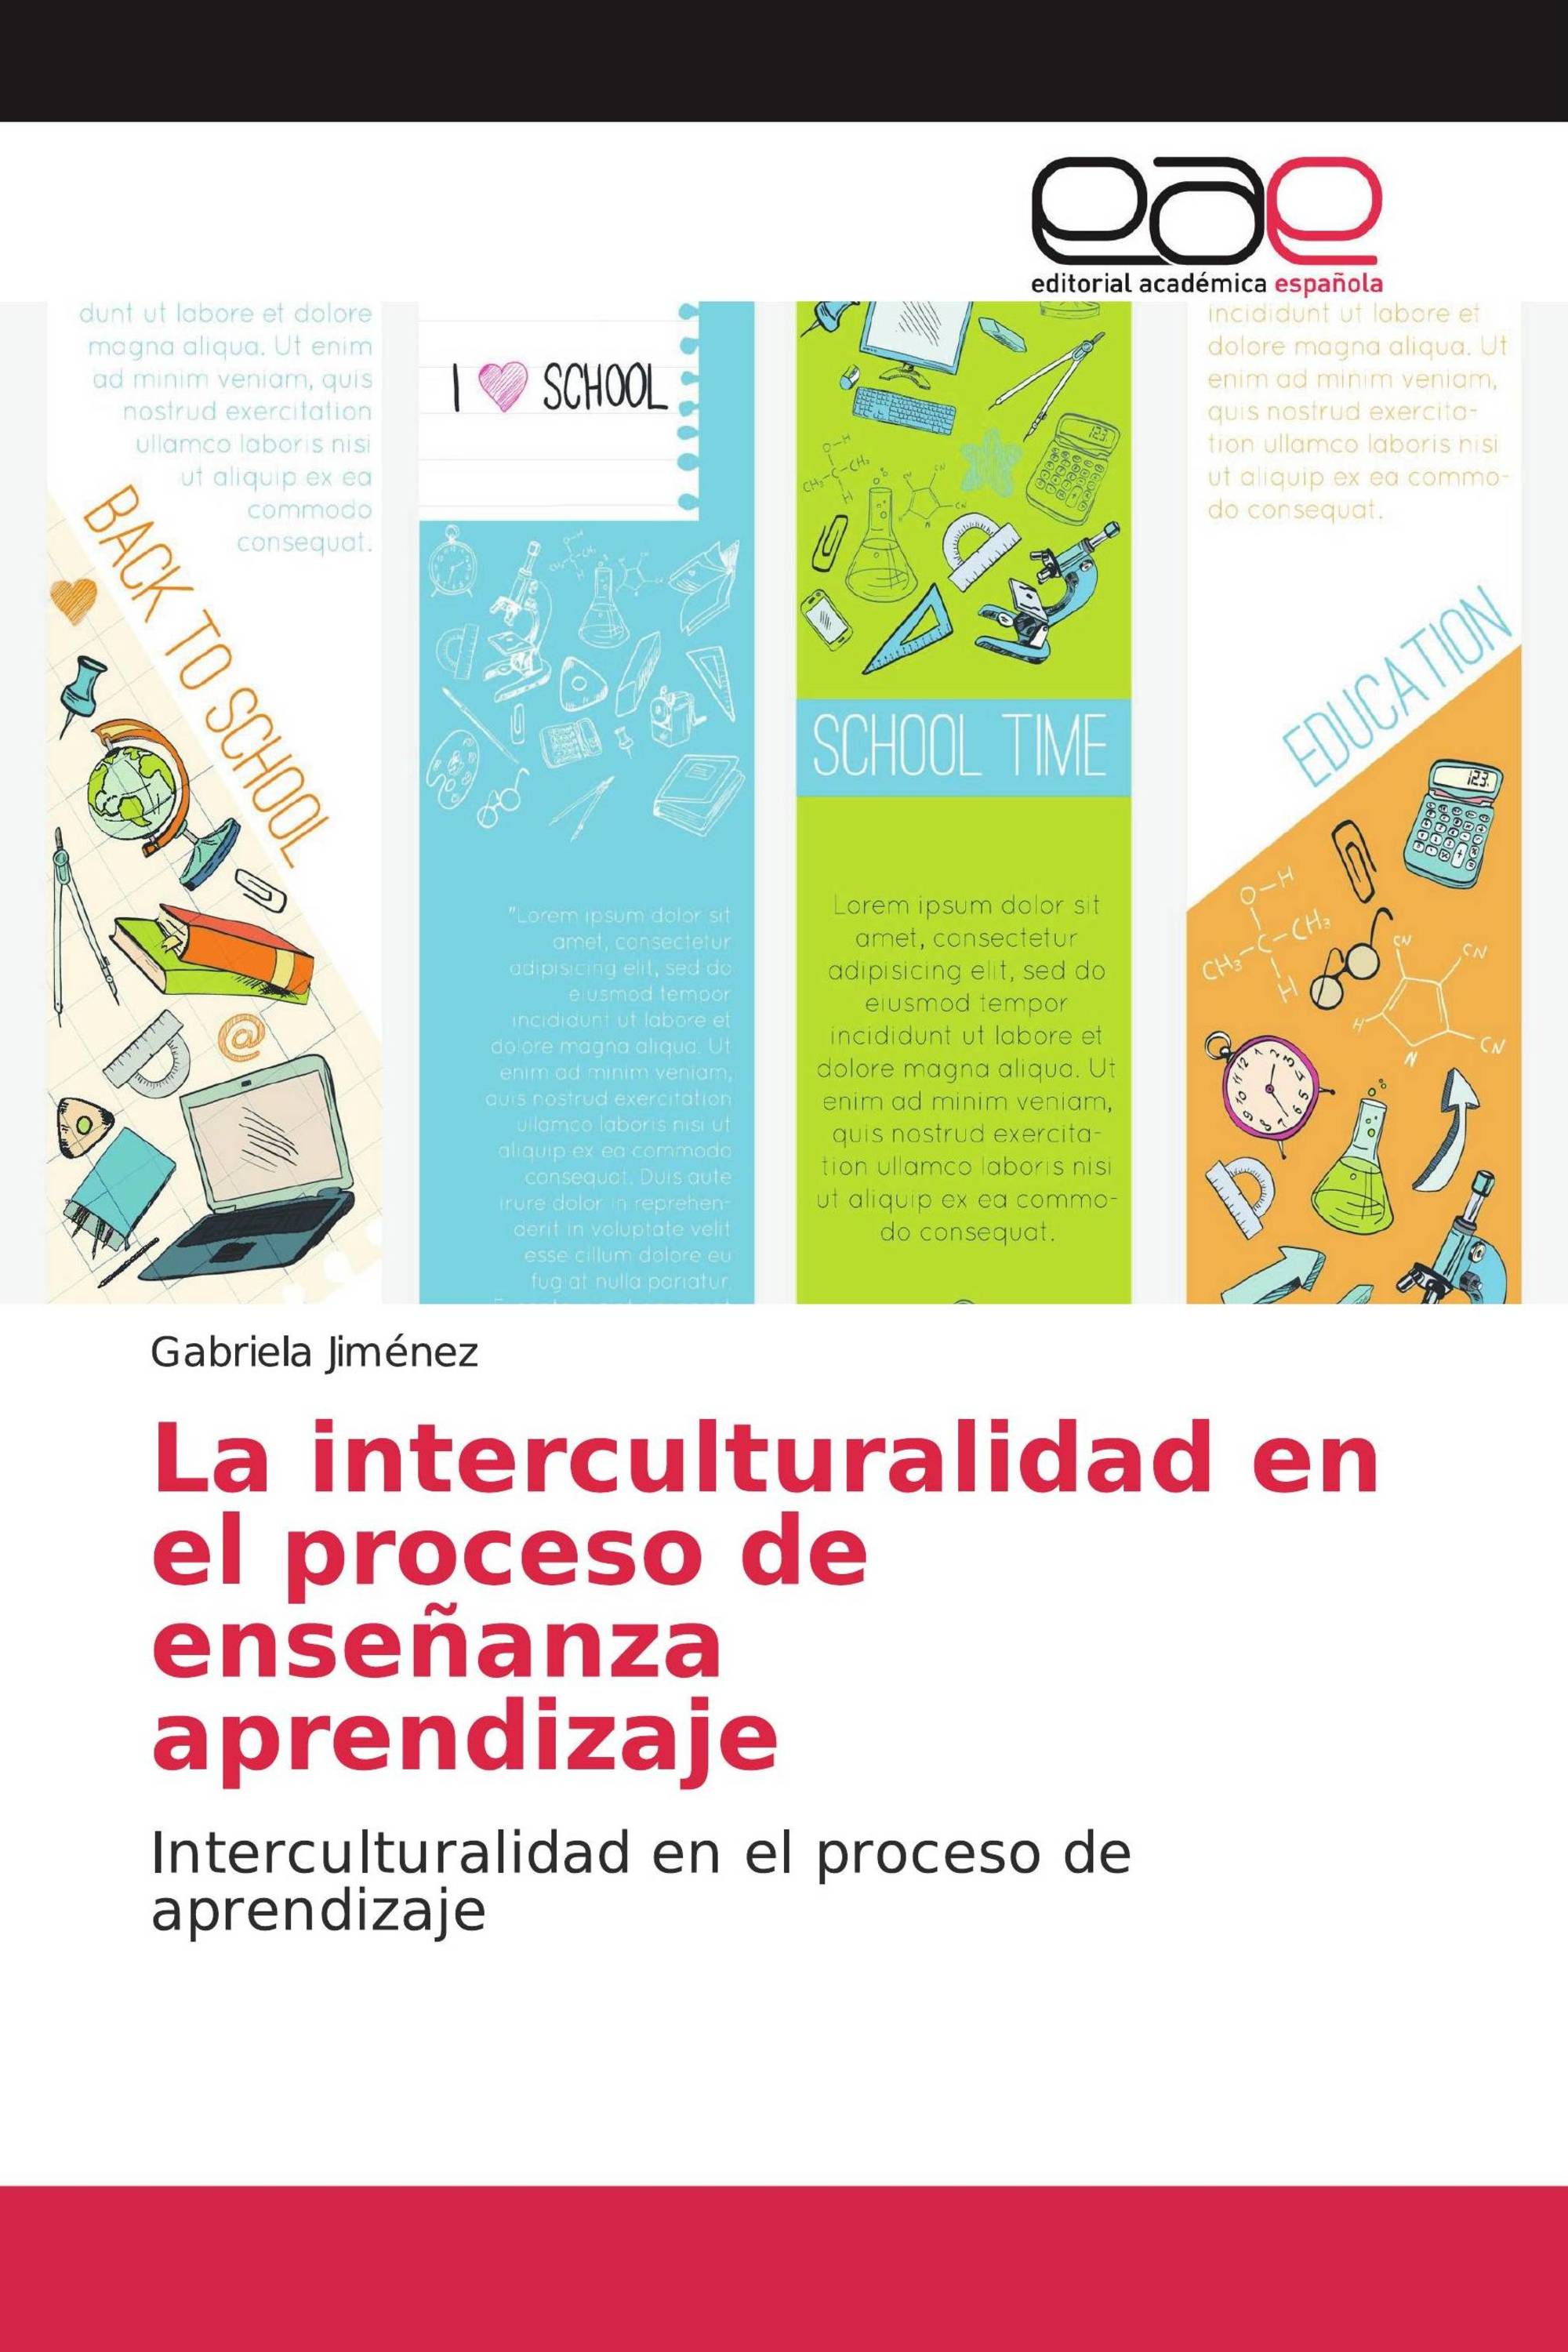 La interculturalidad en el proceso de enseñanza aprendizaje